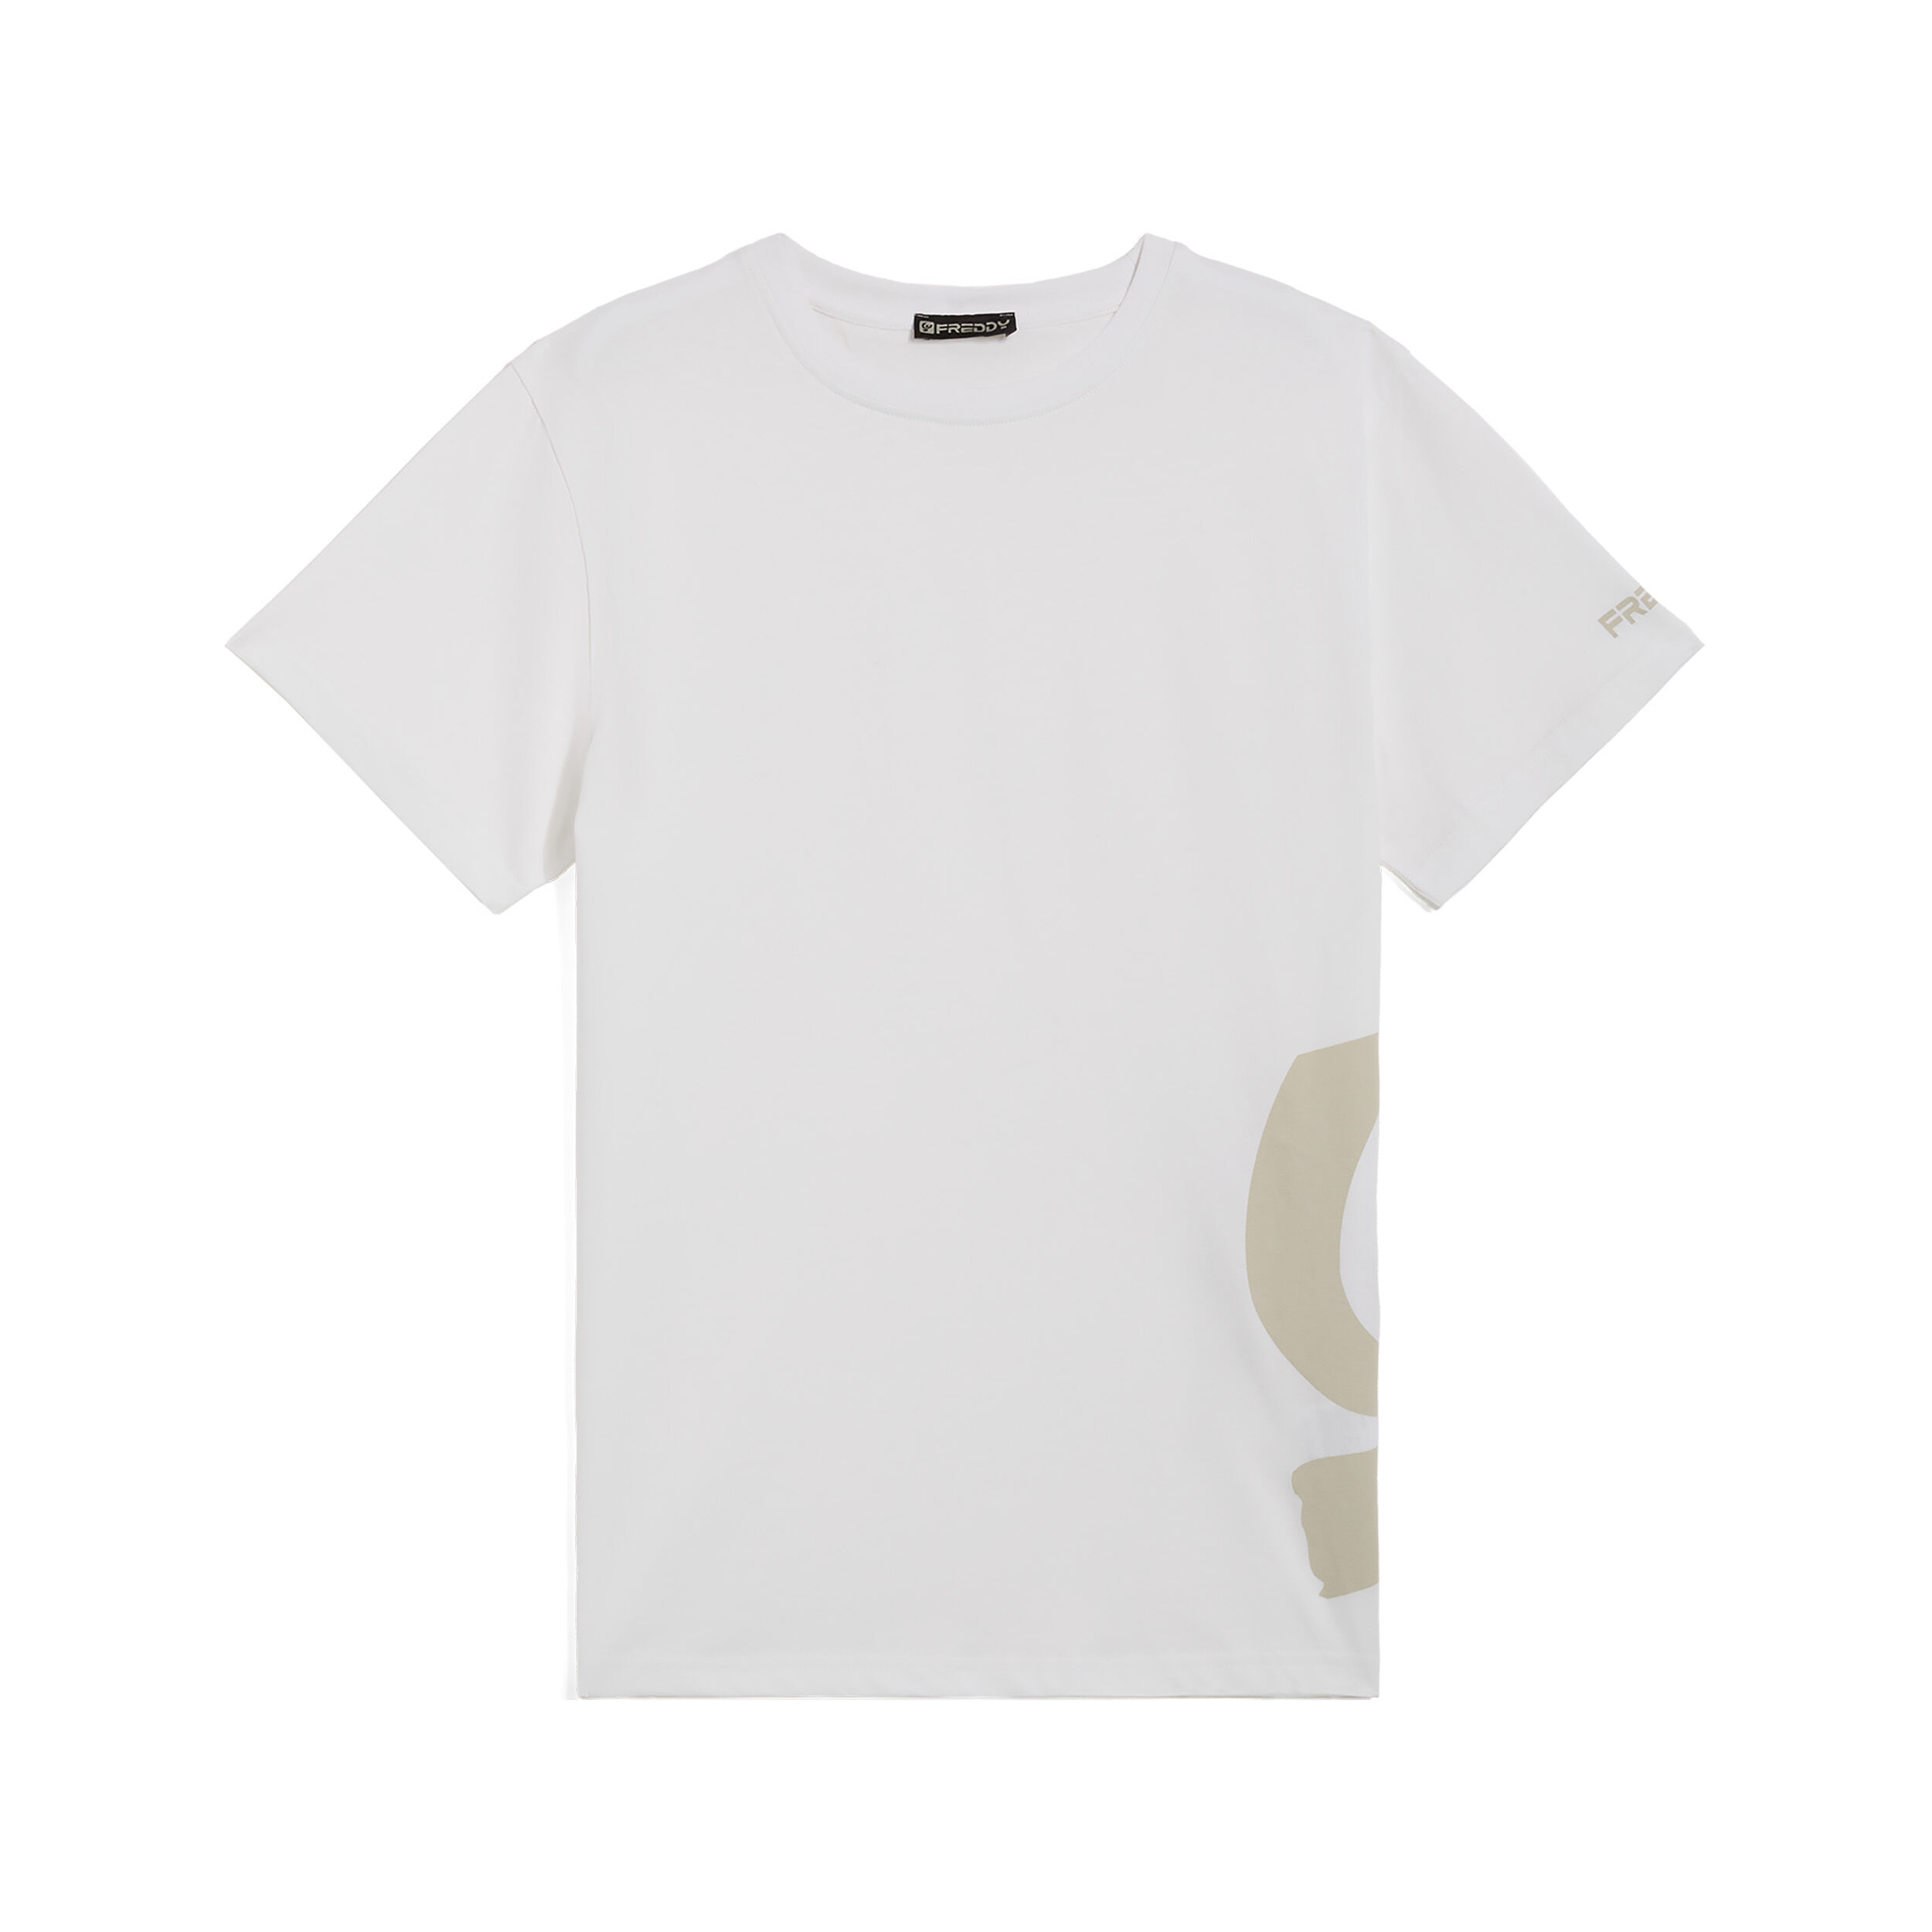 Freddy T-shirt da uomo con maxi logo in tono colore sul fianco Bianco Uomo Medium